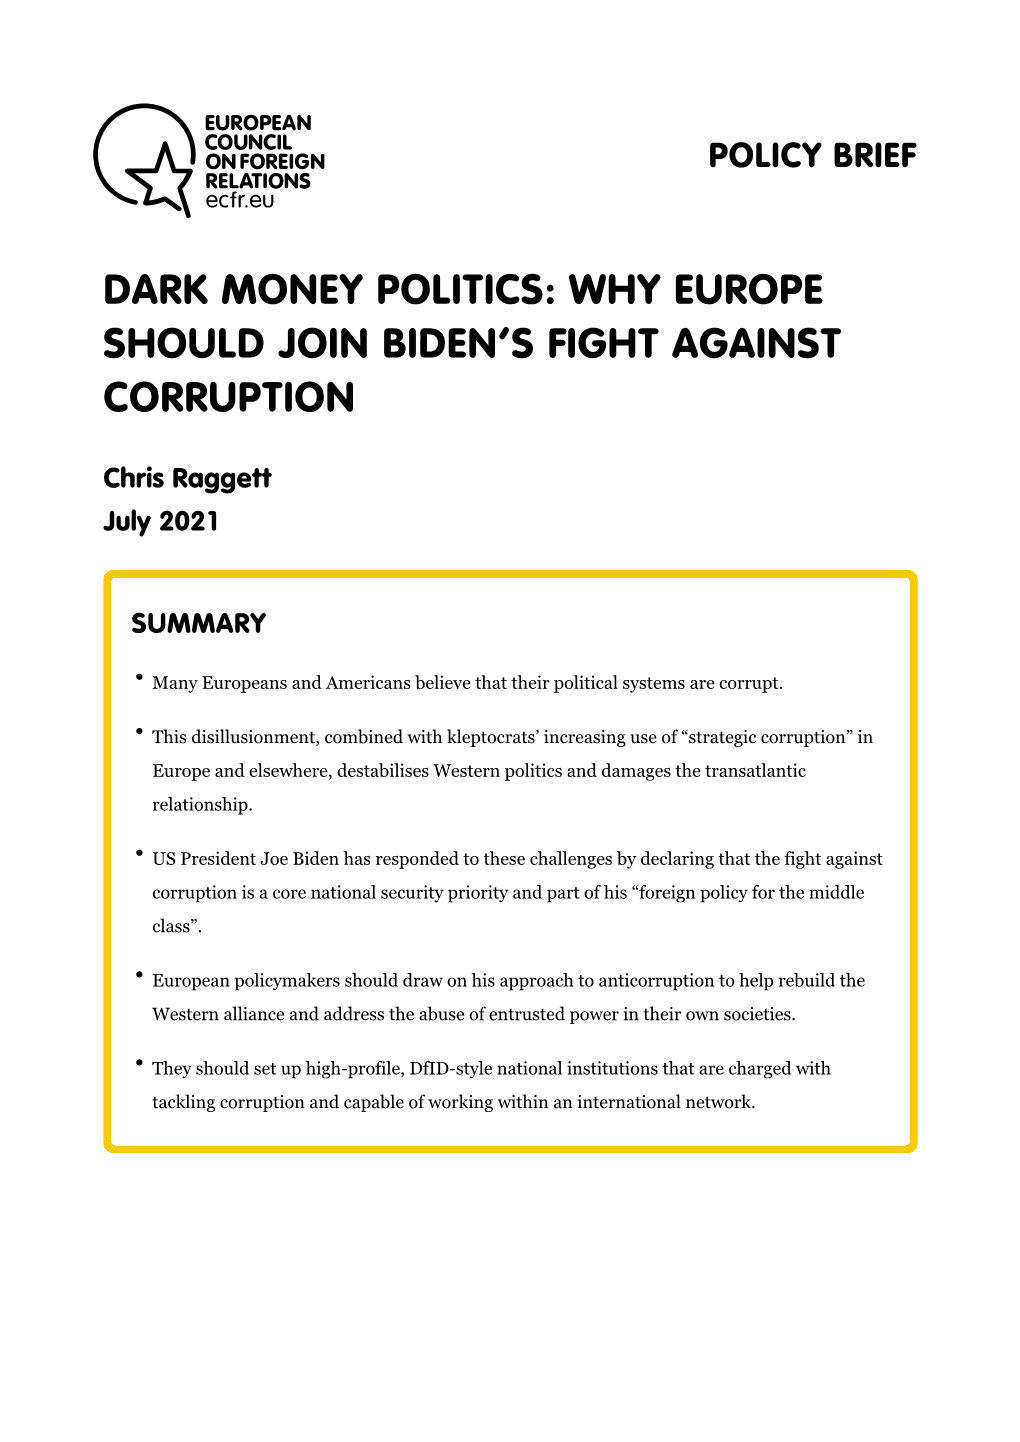 Dark Money Politics: Why Europe Should Join Biden's Fight Against